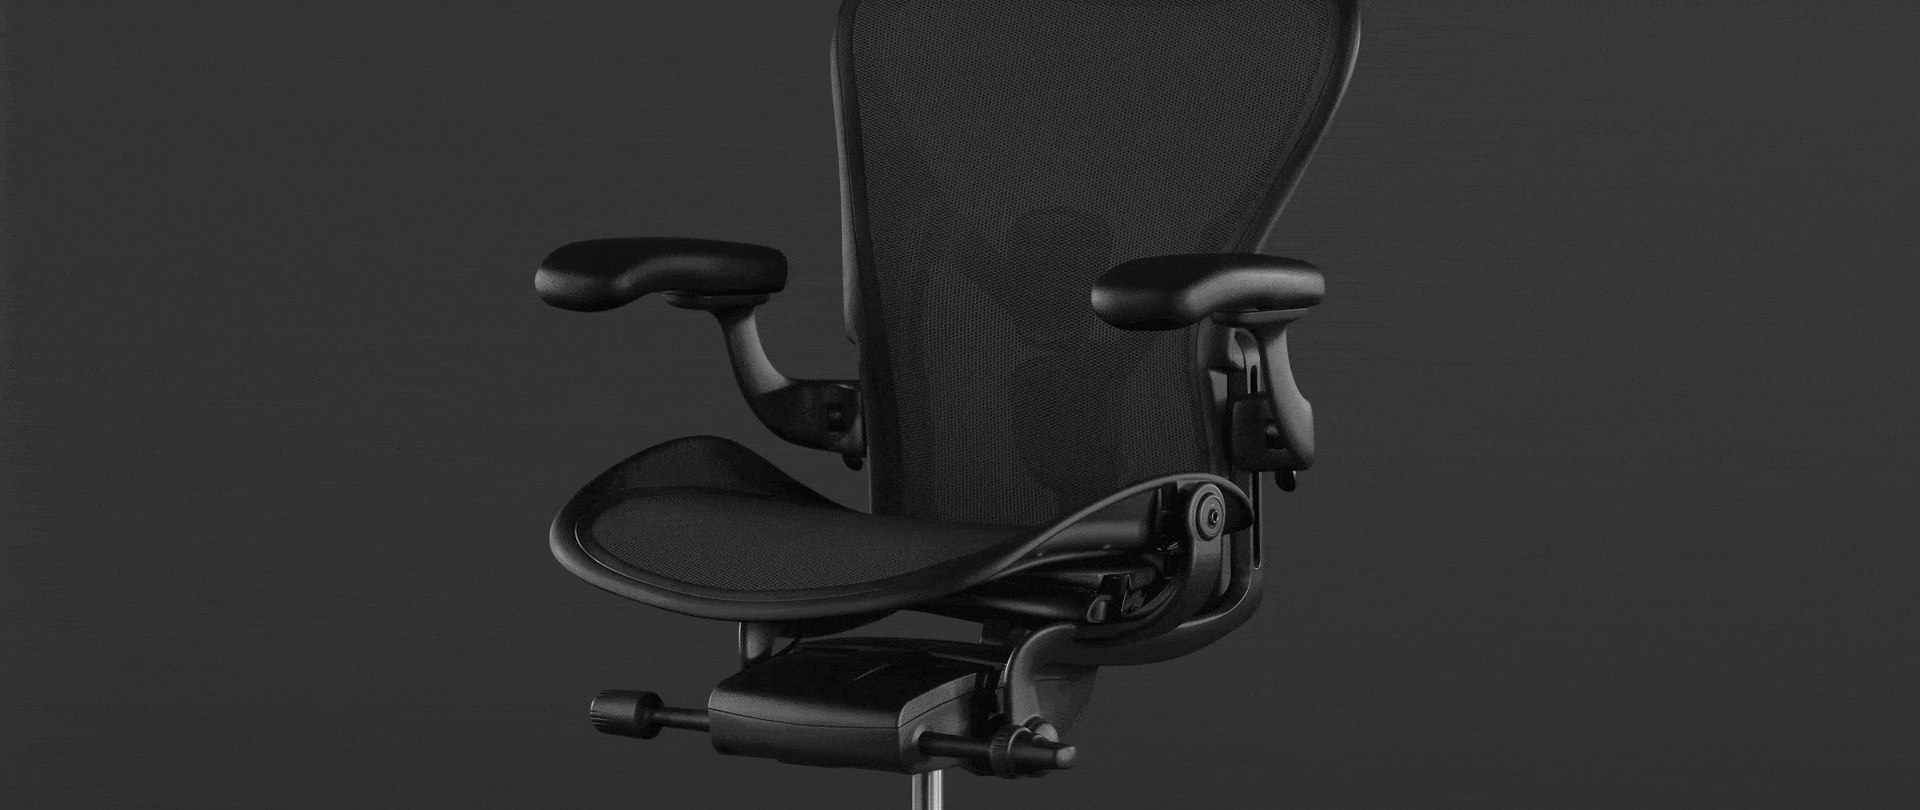 블랙 Aeron 체어 사진 위의 애니메이션은 사용자가 똑바른 자세부터 완전히 뒤로 젖힌 자세까지 부드럽고 간단하게 전환할 수 있게 해주는 의자의 틸트 기능을 이용하여 어떻게 신체를 자연스럽게 움직이는지 보여줍니다.